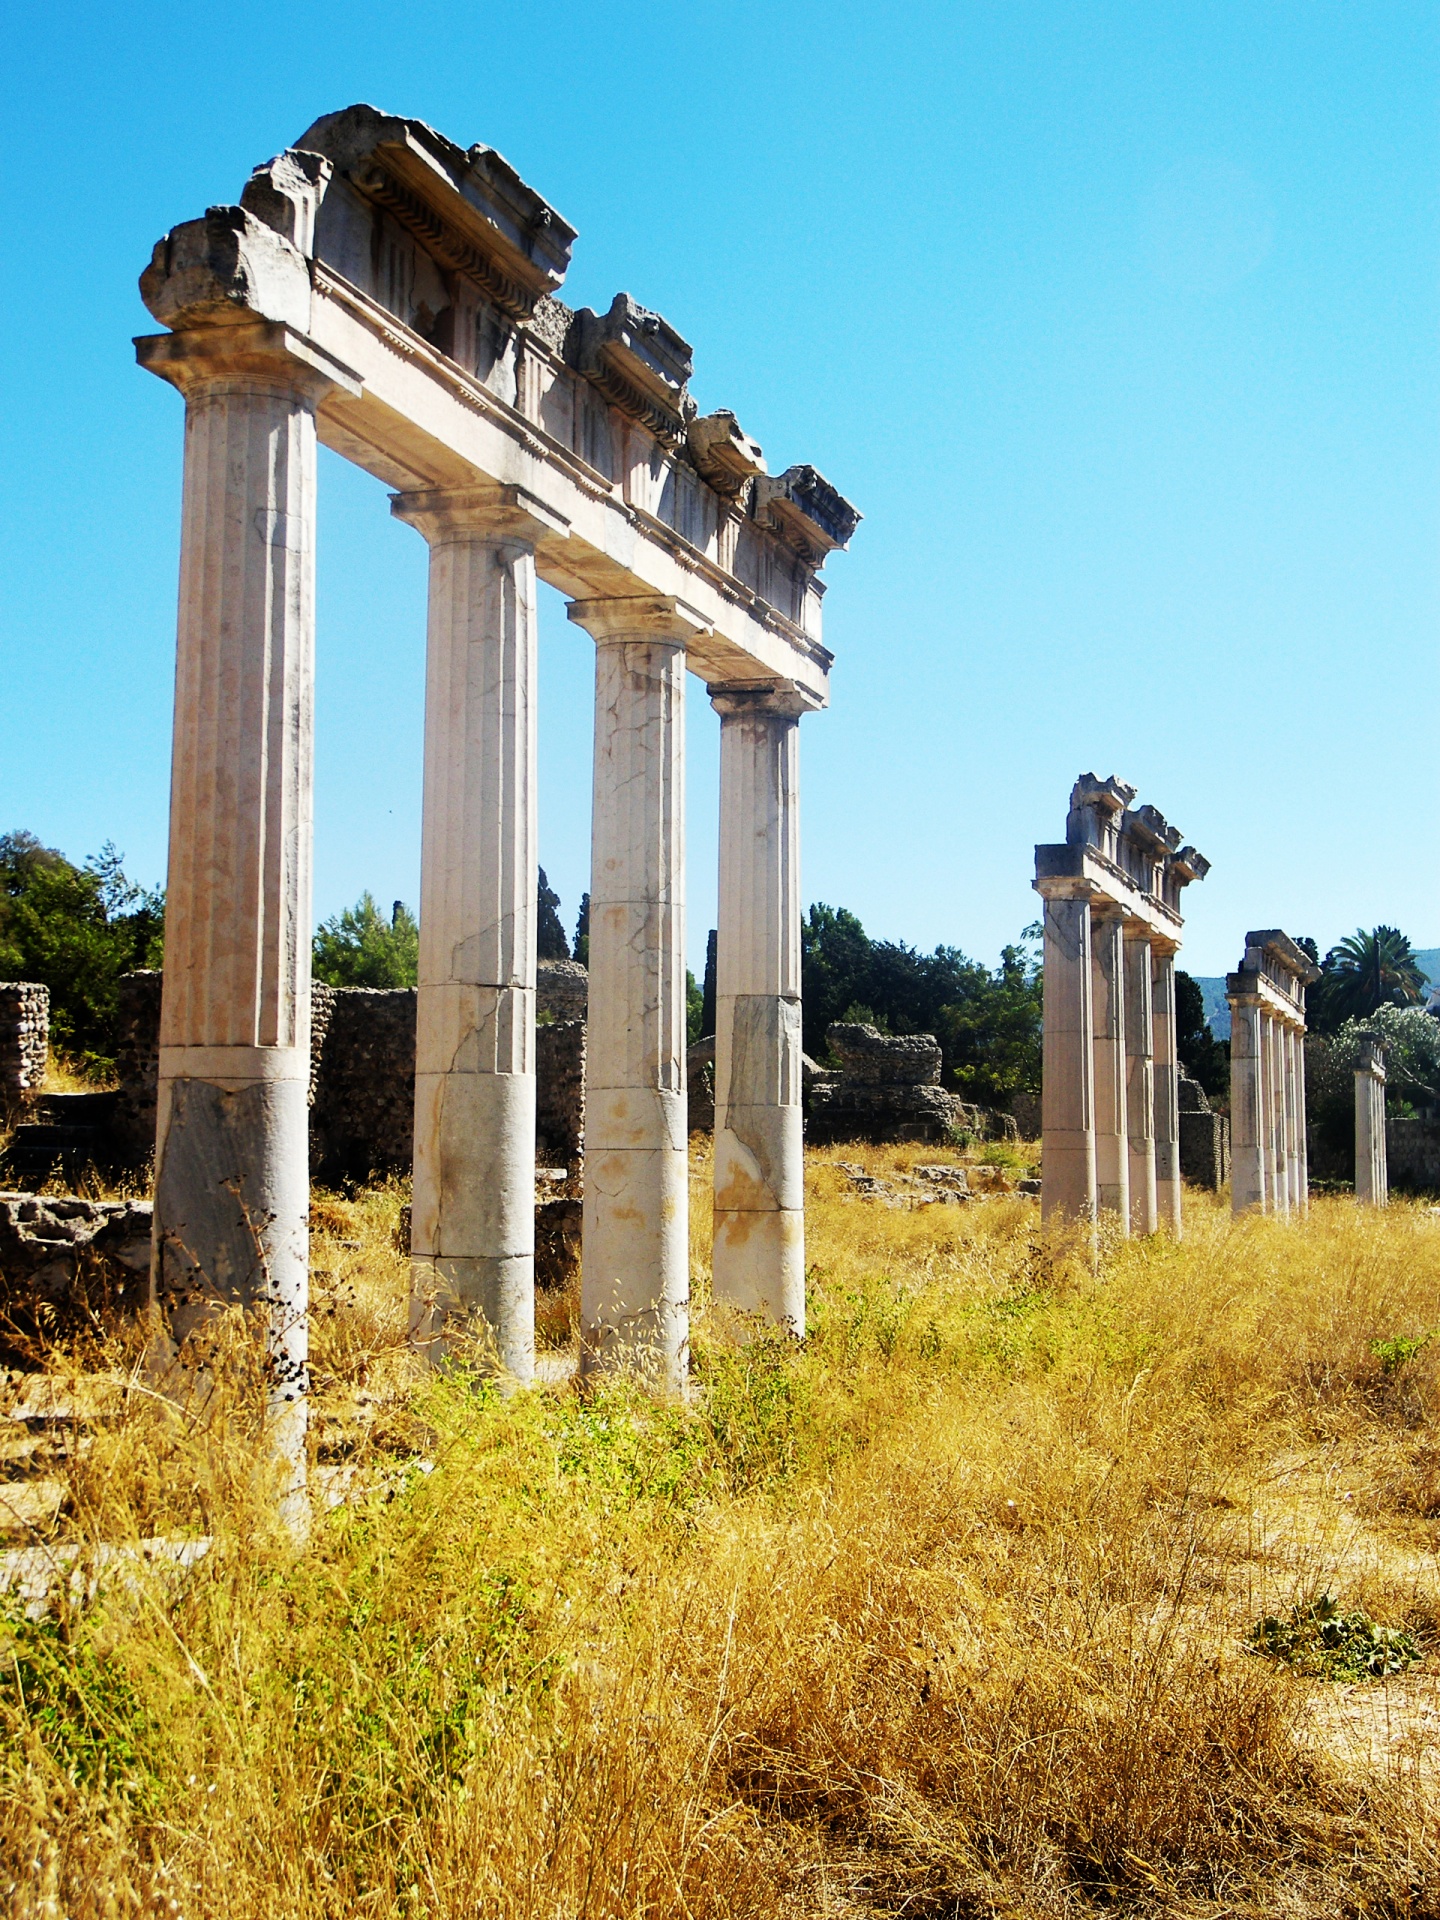 Ancient Columns